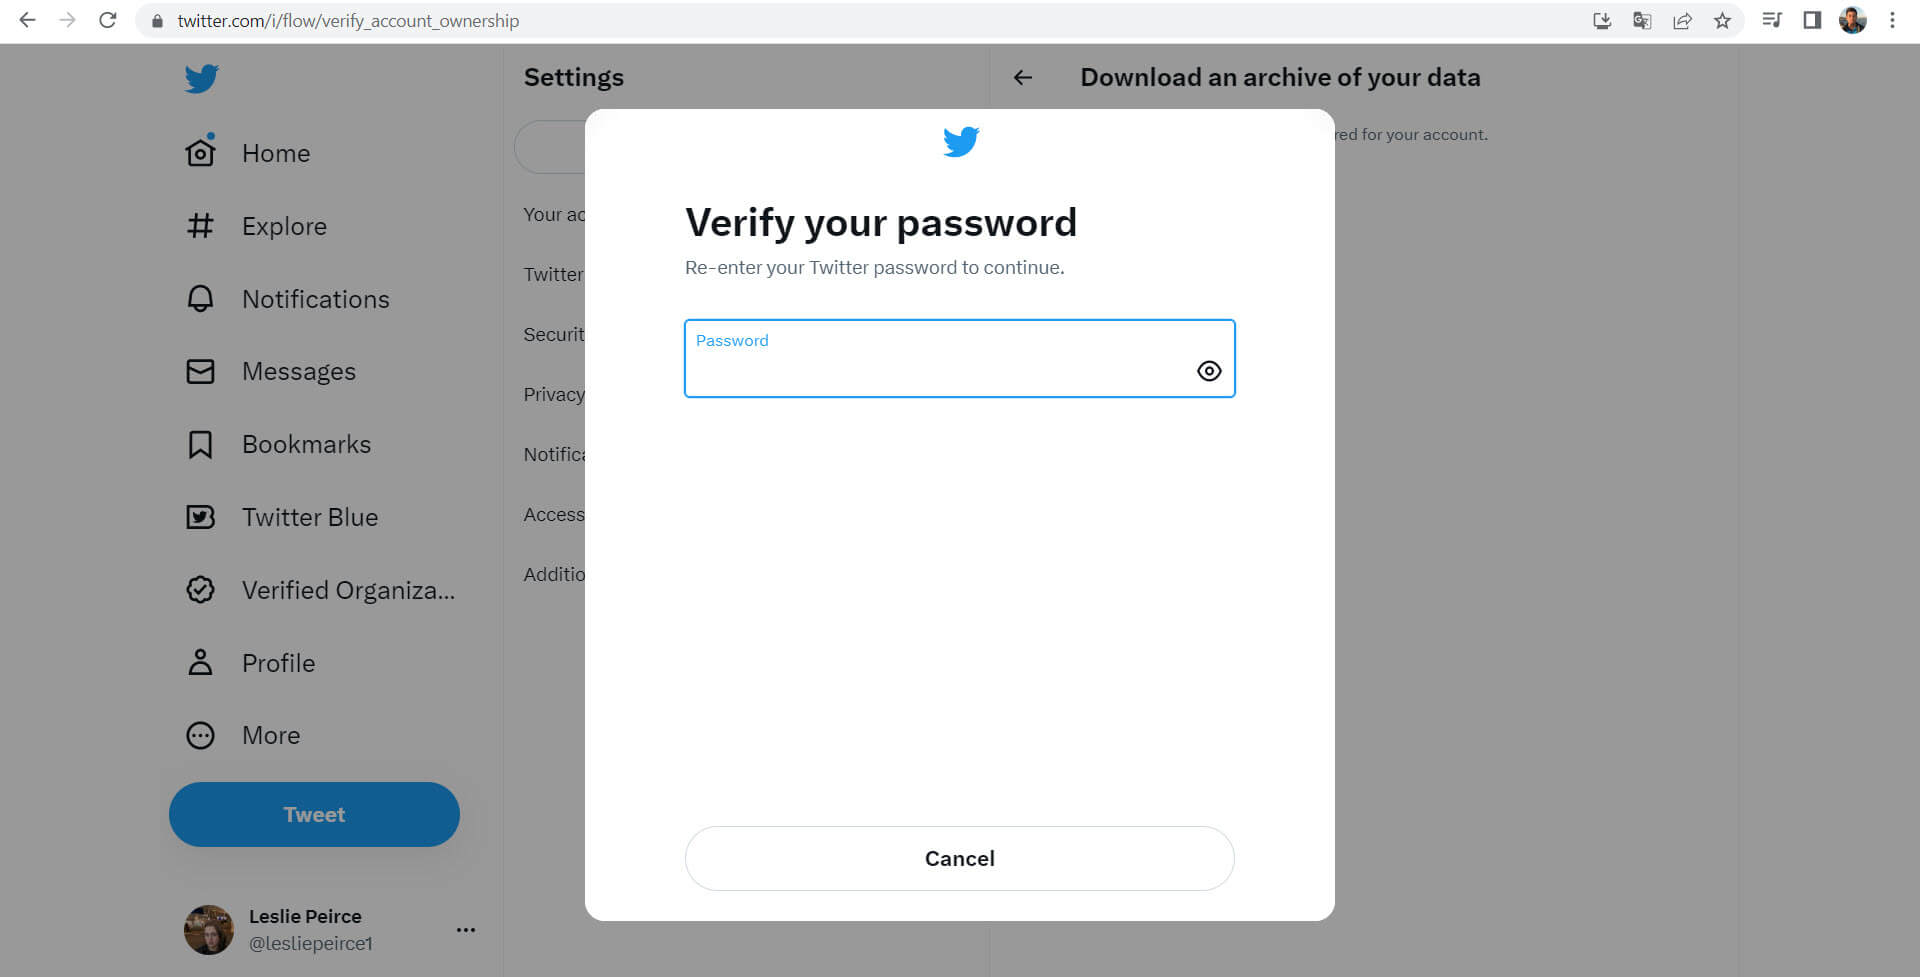 Verify your password